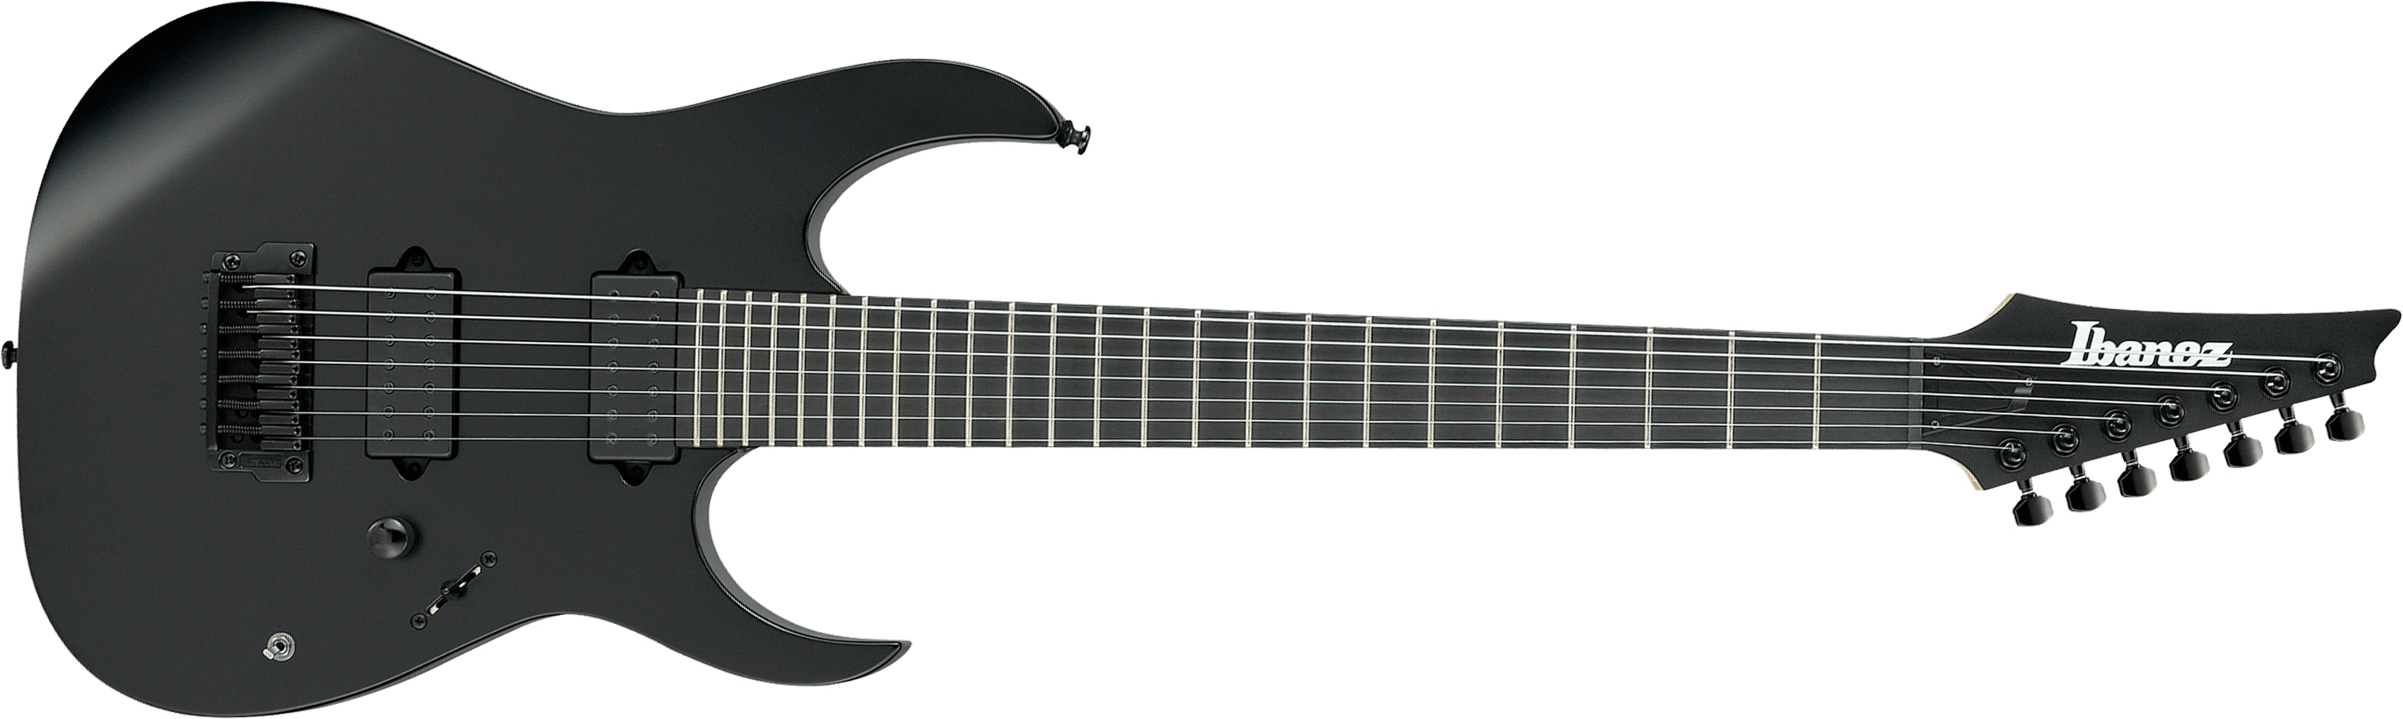 Ibanez Rgixl7 Bkf Iron Label Hh Dimarzio Ht Eb - Black Flat - Guitarra eléctrica de 7 cuerdas - Main picture